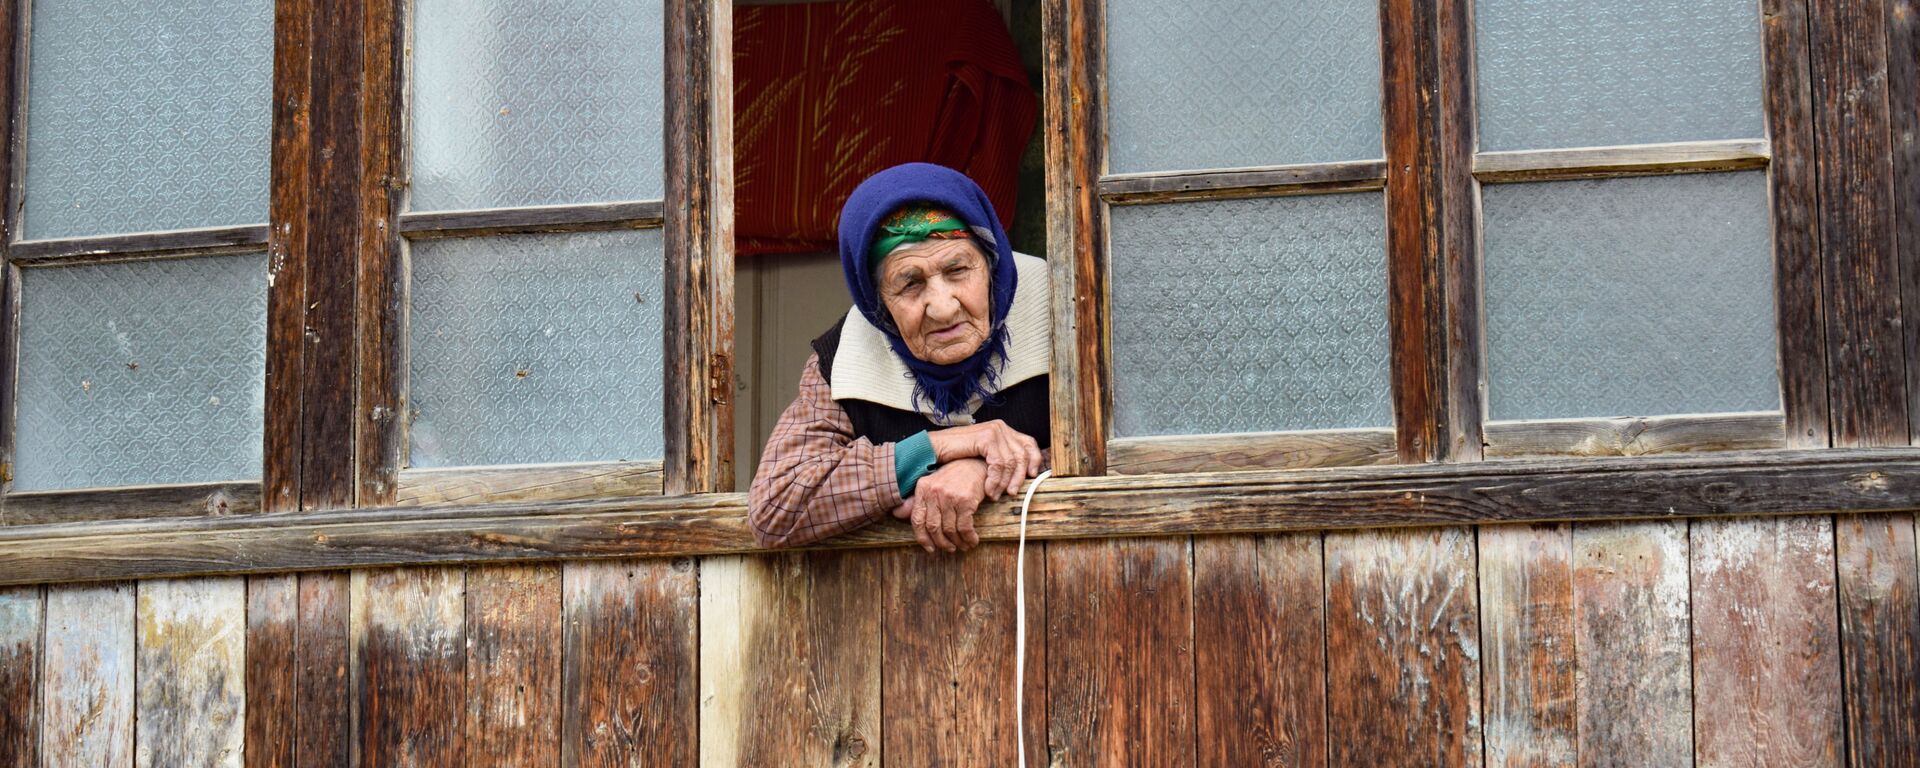 Пожилая женщина, фото из архива - Sputnik Азербайджан, 1920, 16.01.2021